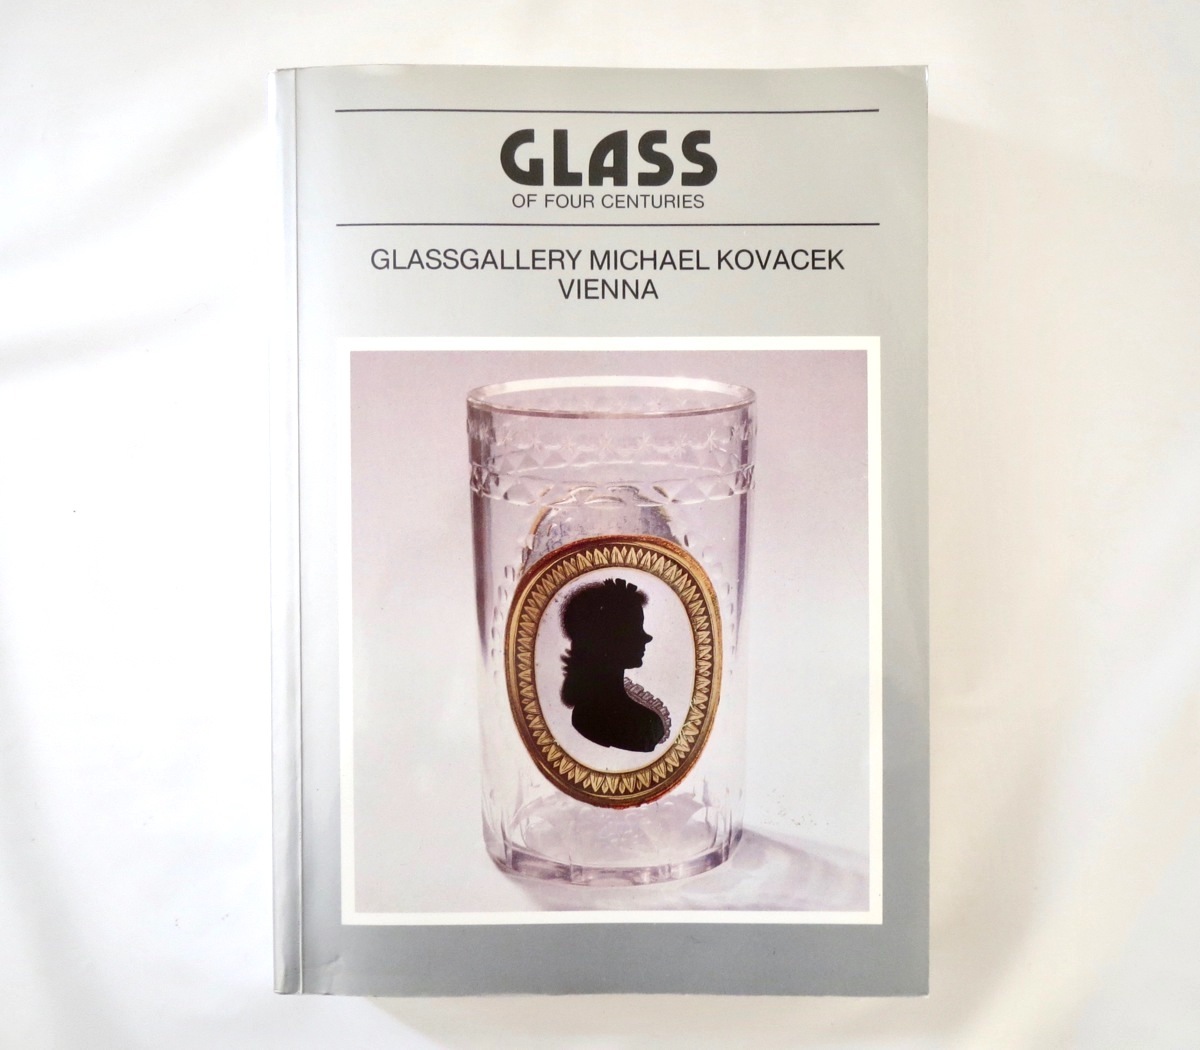 【洋書】「4世紀のガラス」GLASSGALLERY MICHAEL KOVACEK（1989年）16-20世紀のヨーロッパガラス工芸 ルネッサンス バロック